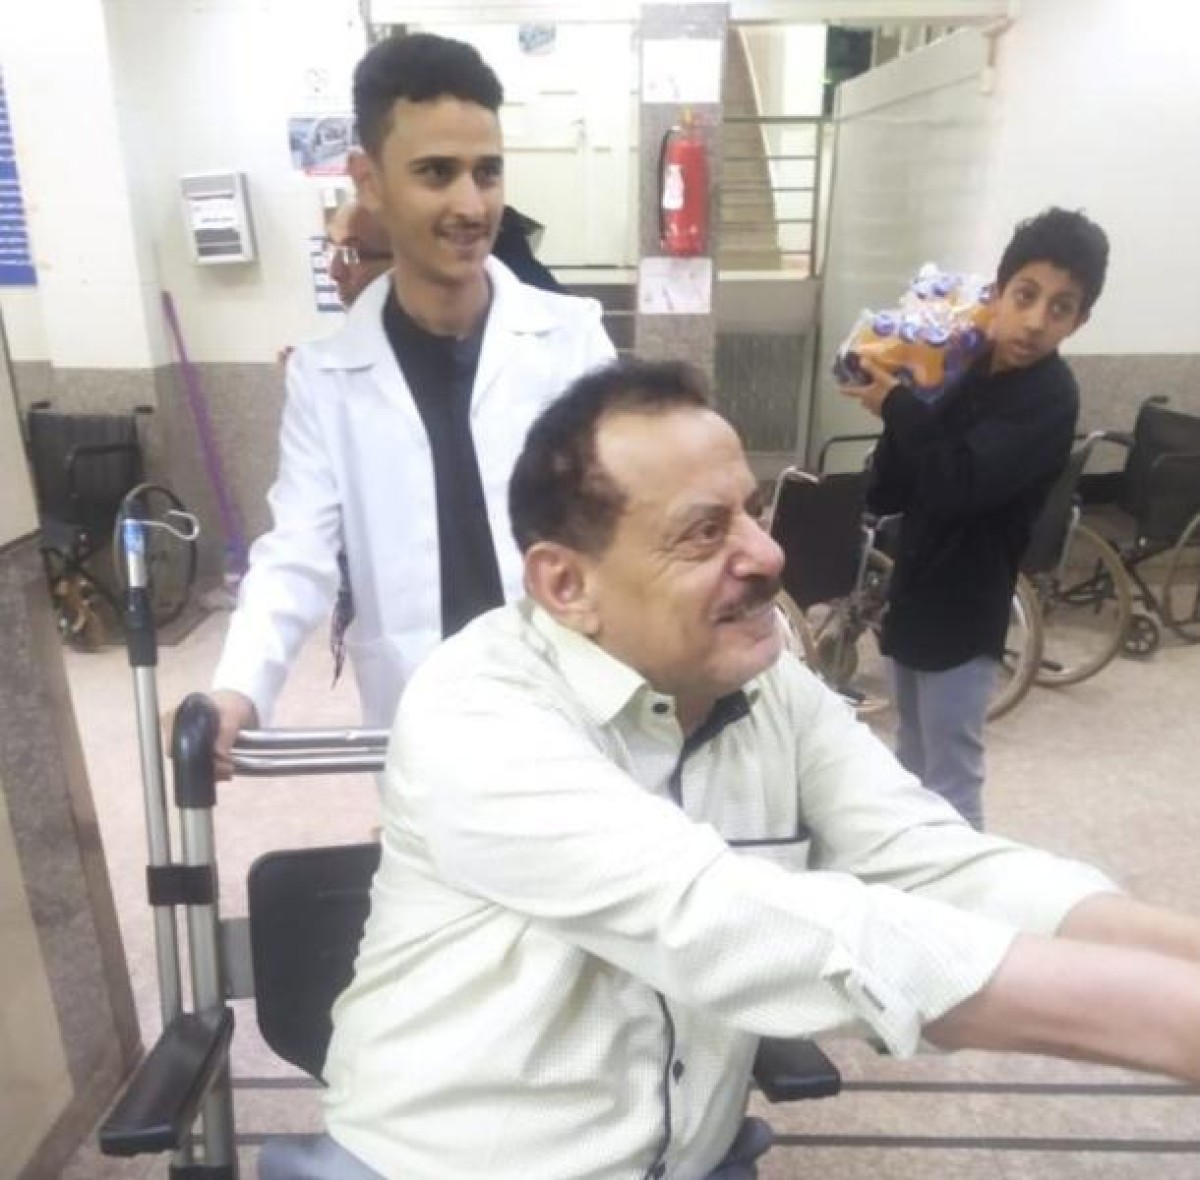 البرلماني "حاشد" يؤكد رغبته في مغادرة صنعاء ويحمل الحوثيين المسؤولية